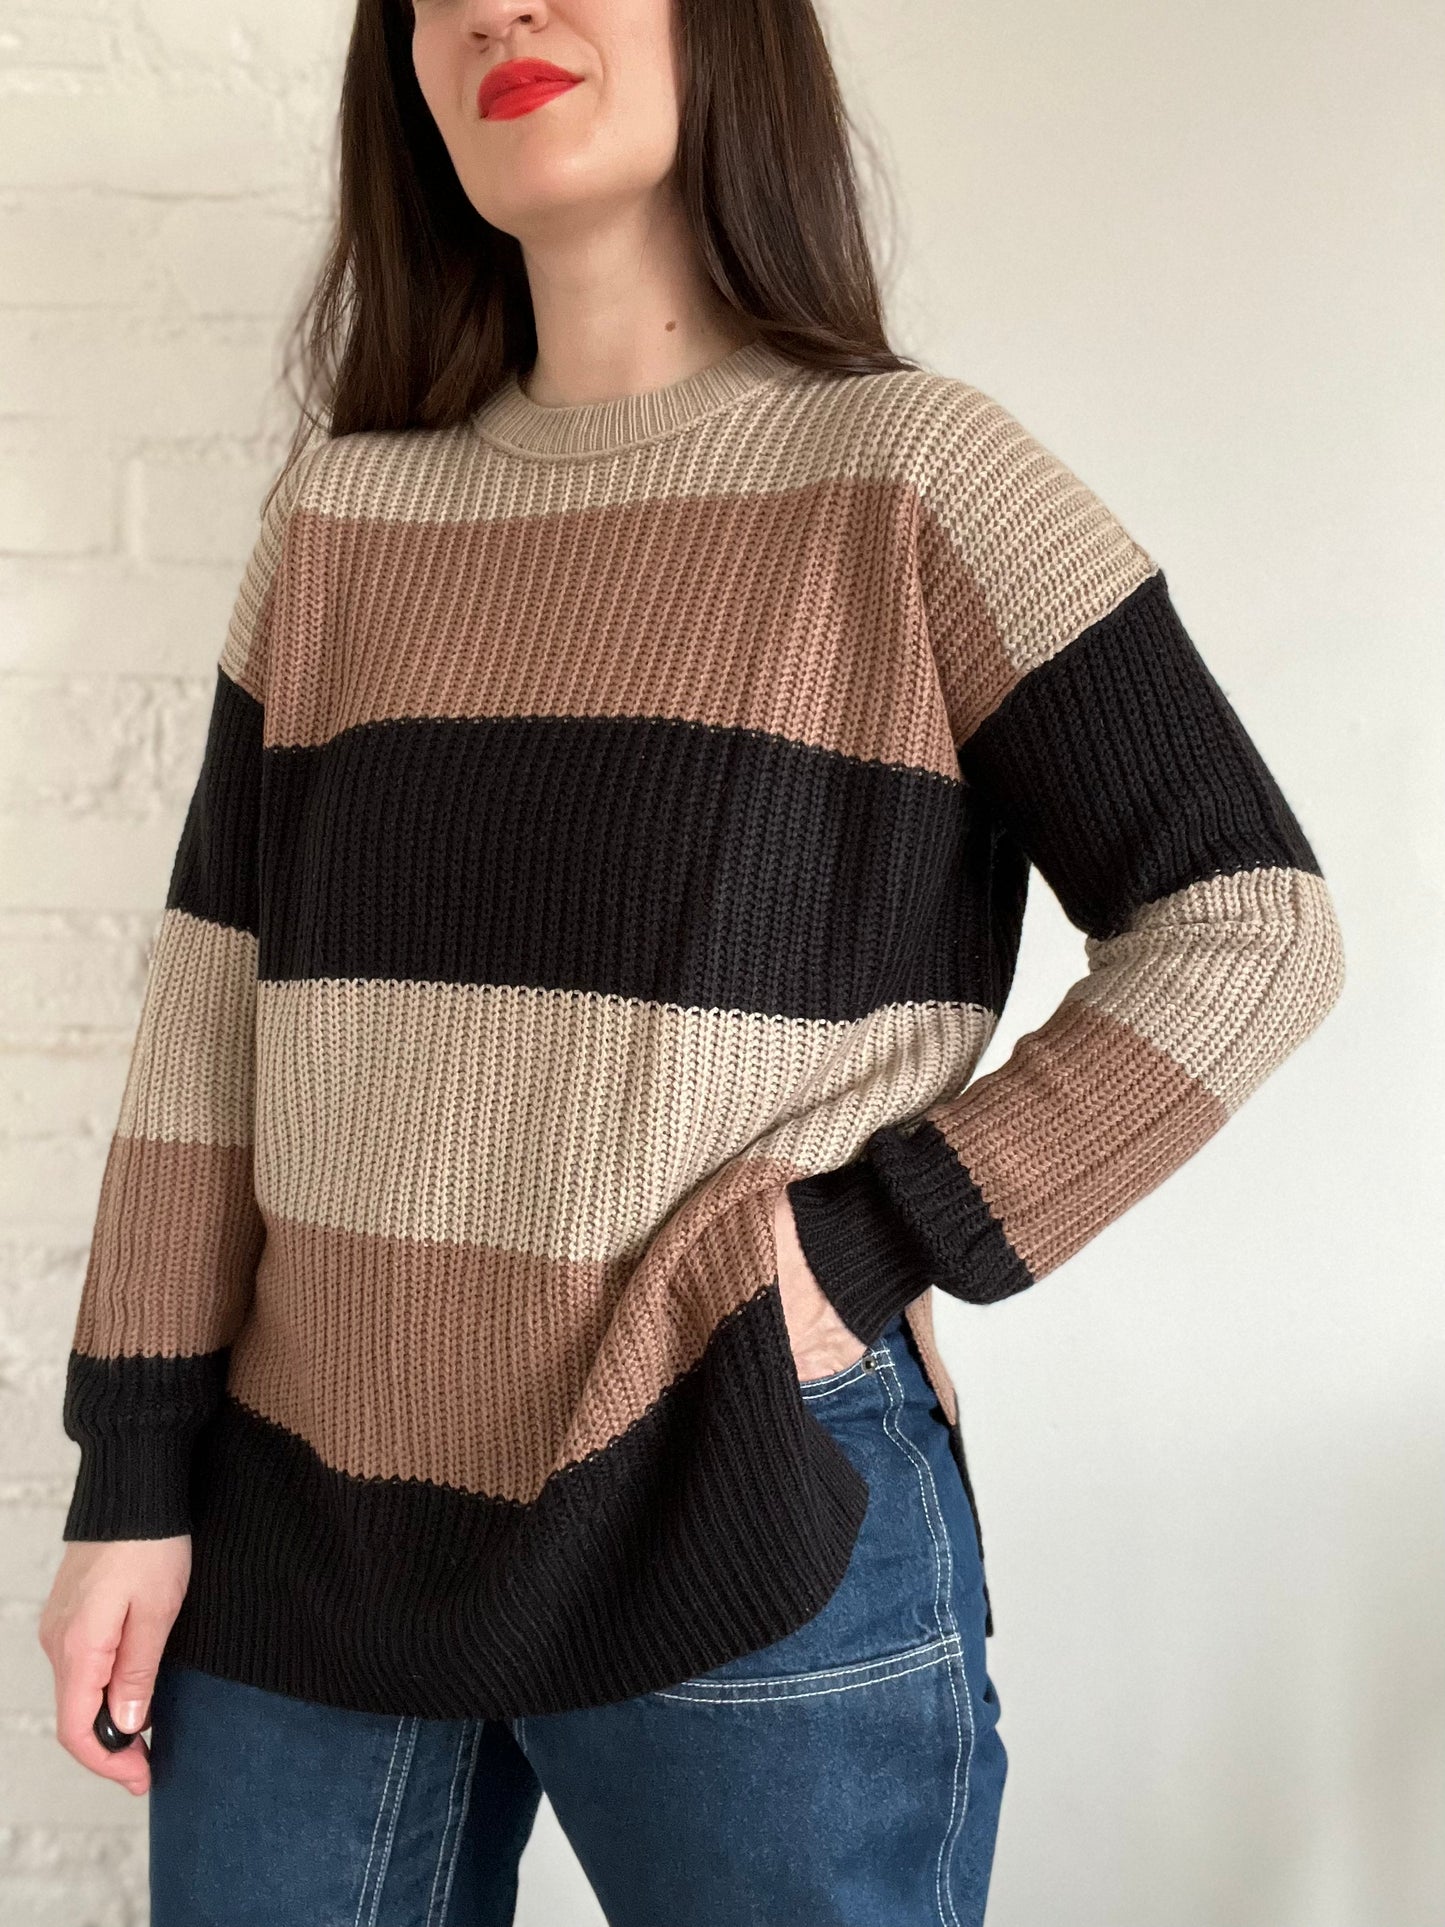 Neutral Striped Sweater - M/L